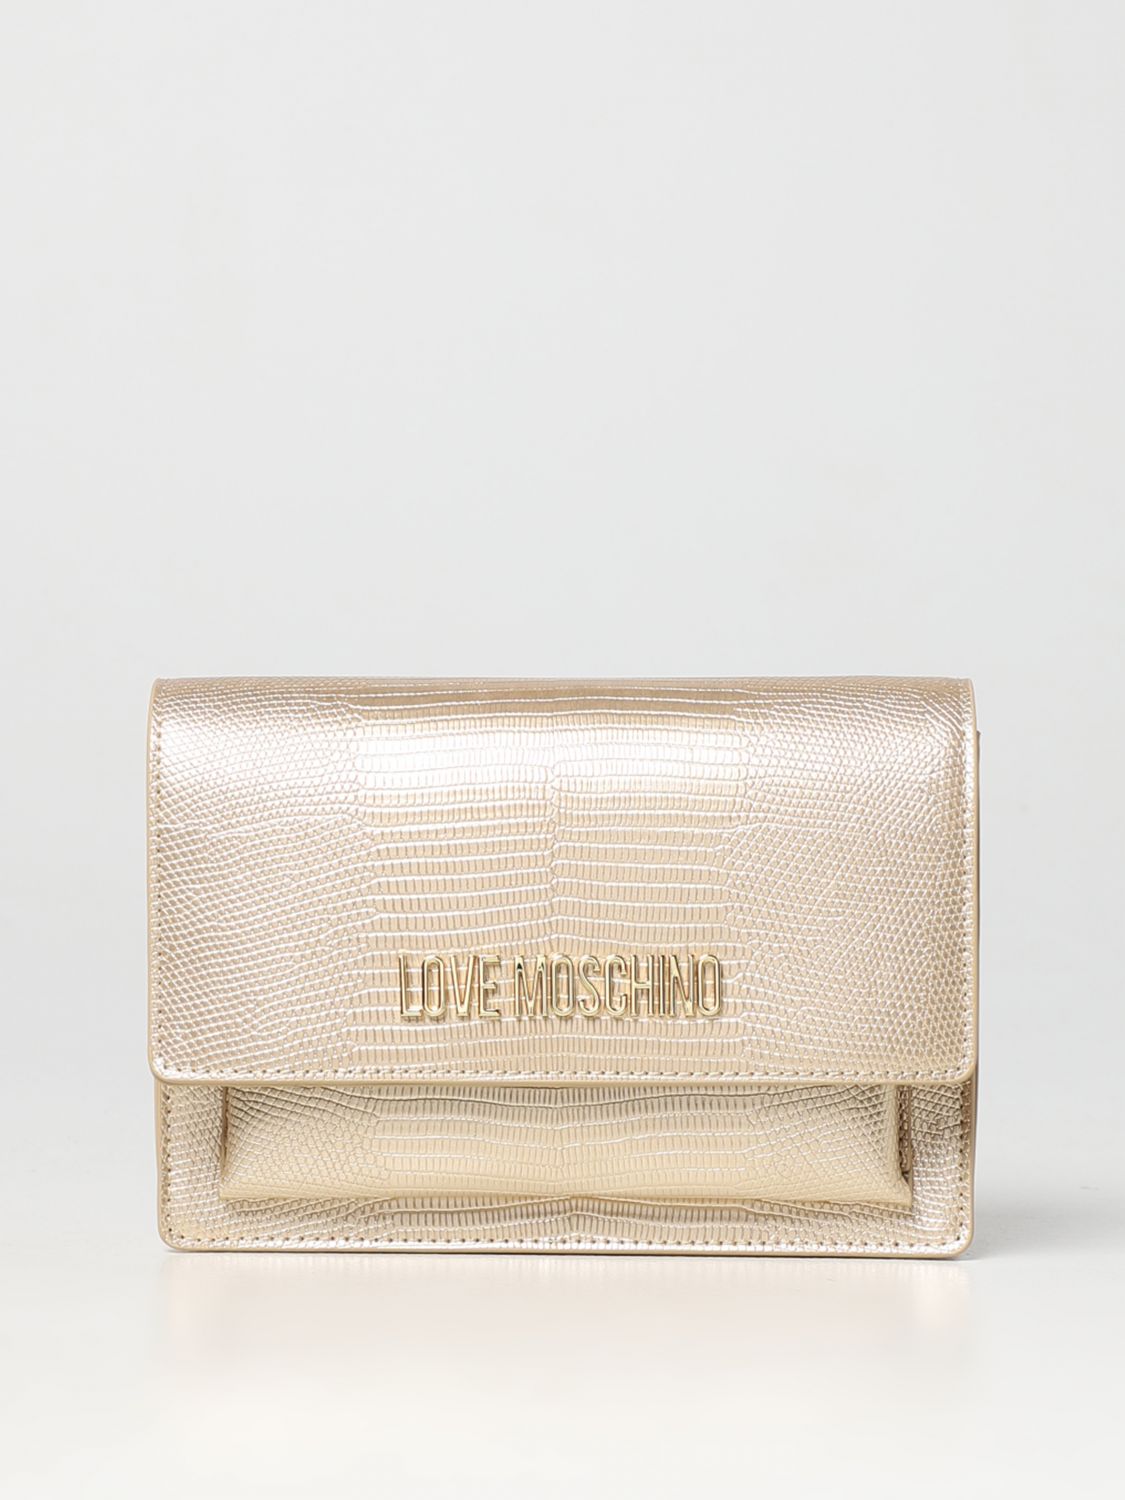 Borsa mini Love Moschino: Borsa wallet Love Moschino in pelle sintetica stampa pitone oro 1